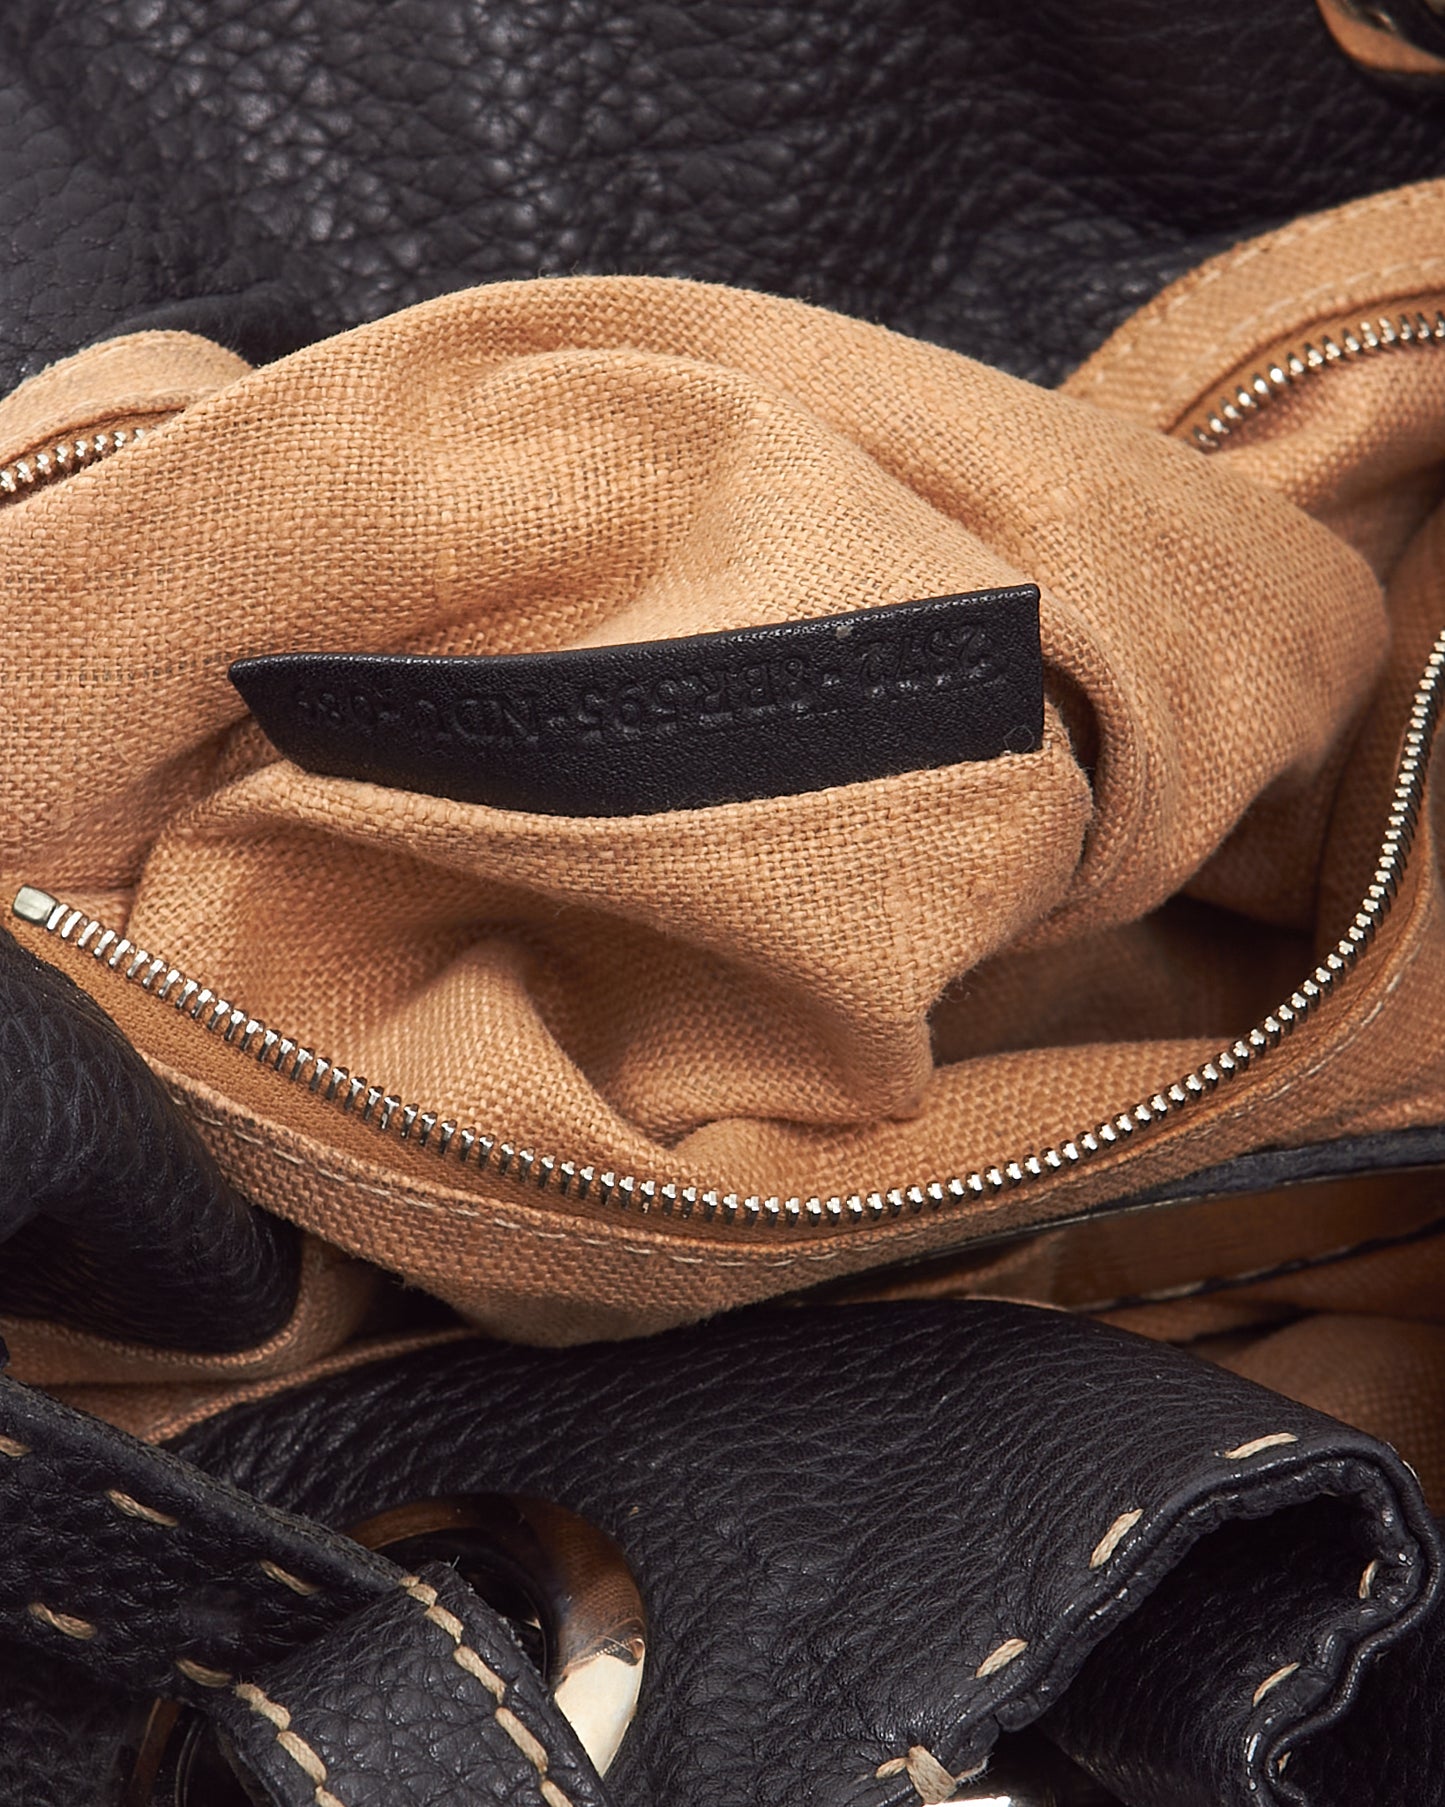 Fendi Black Selleria Top Stitch Grained Leather Tote Bag